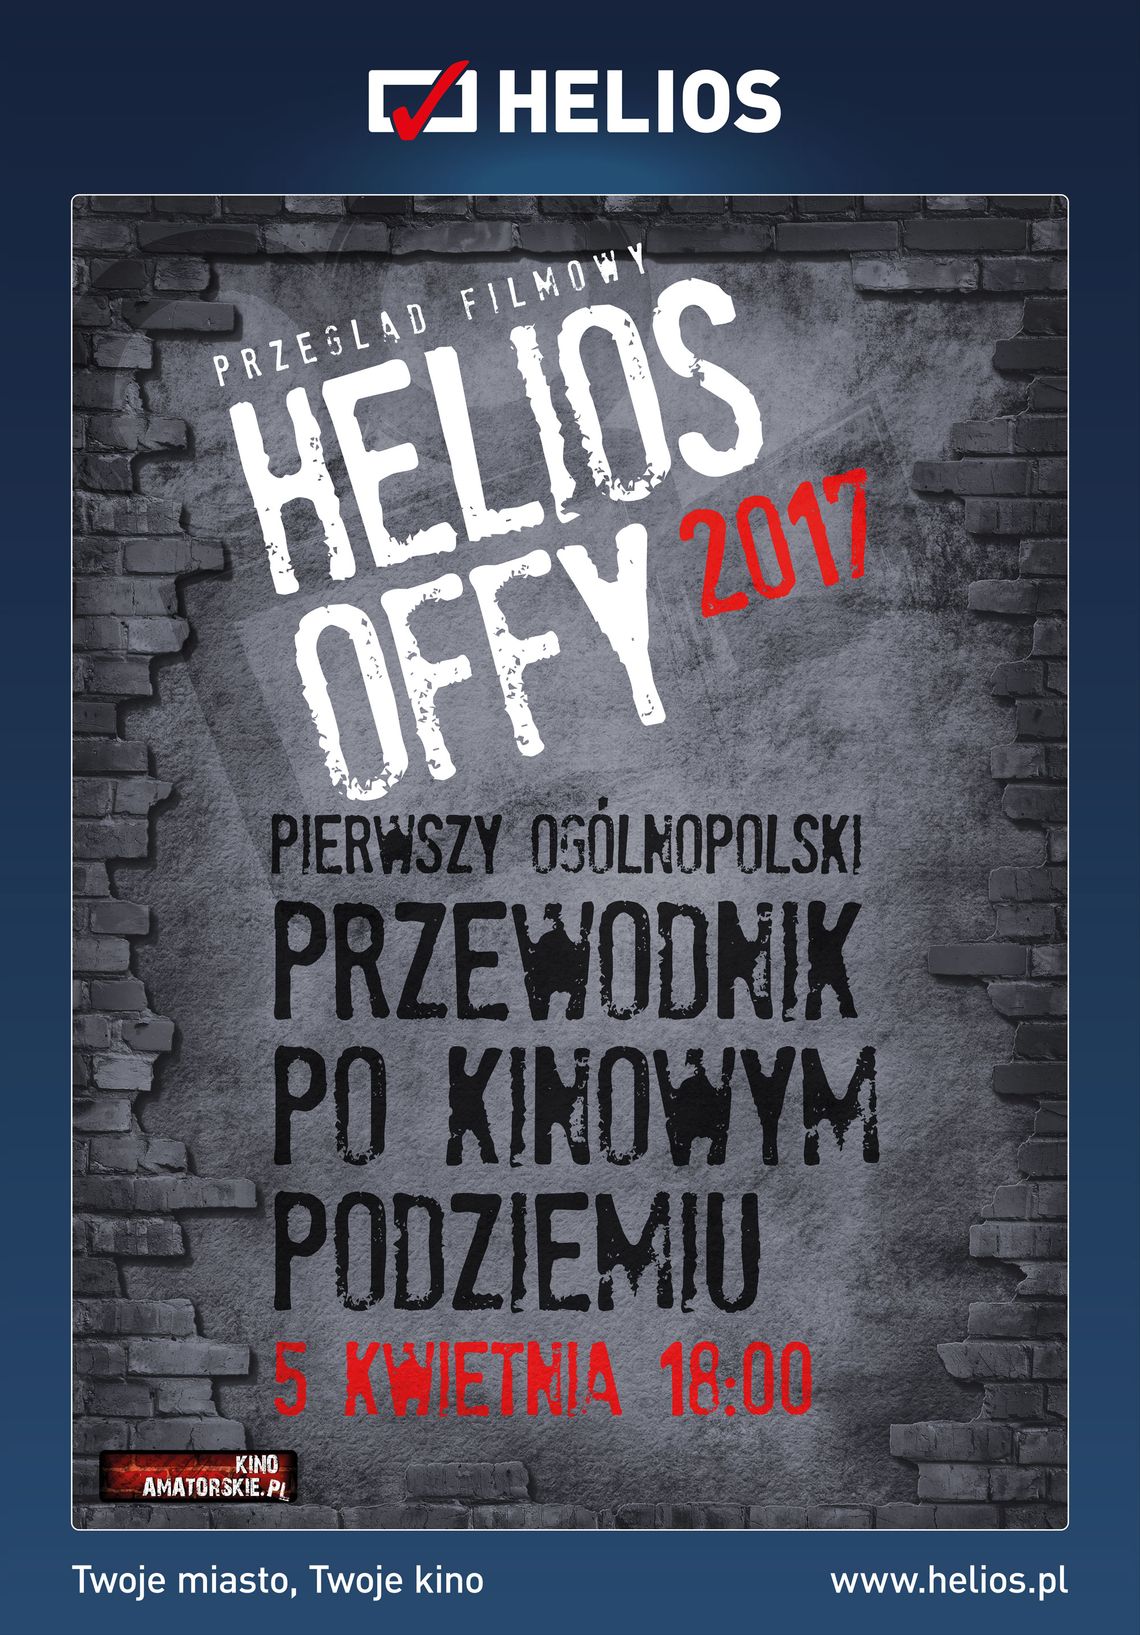 Helios OFF-y 2017